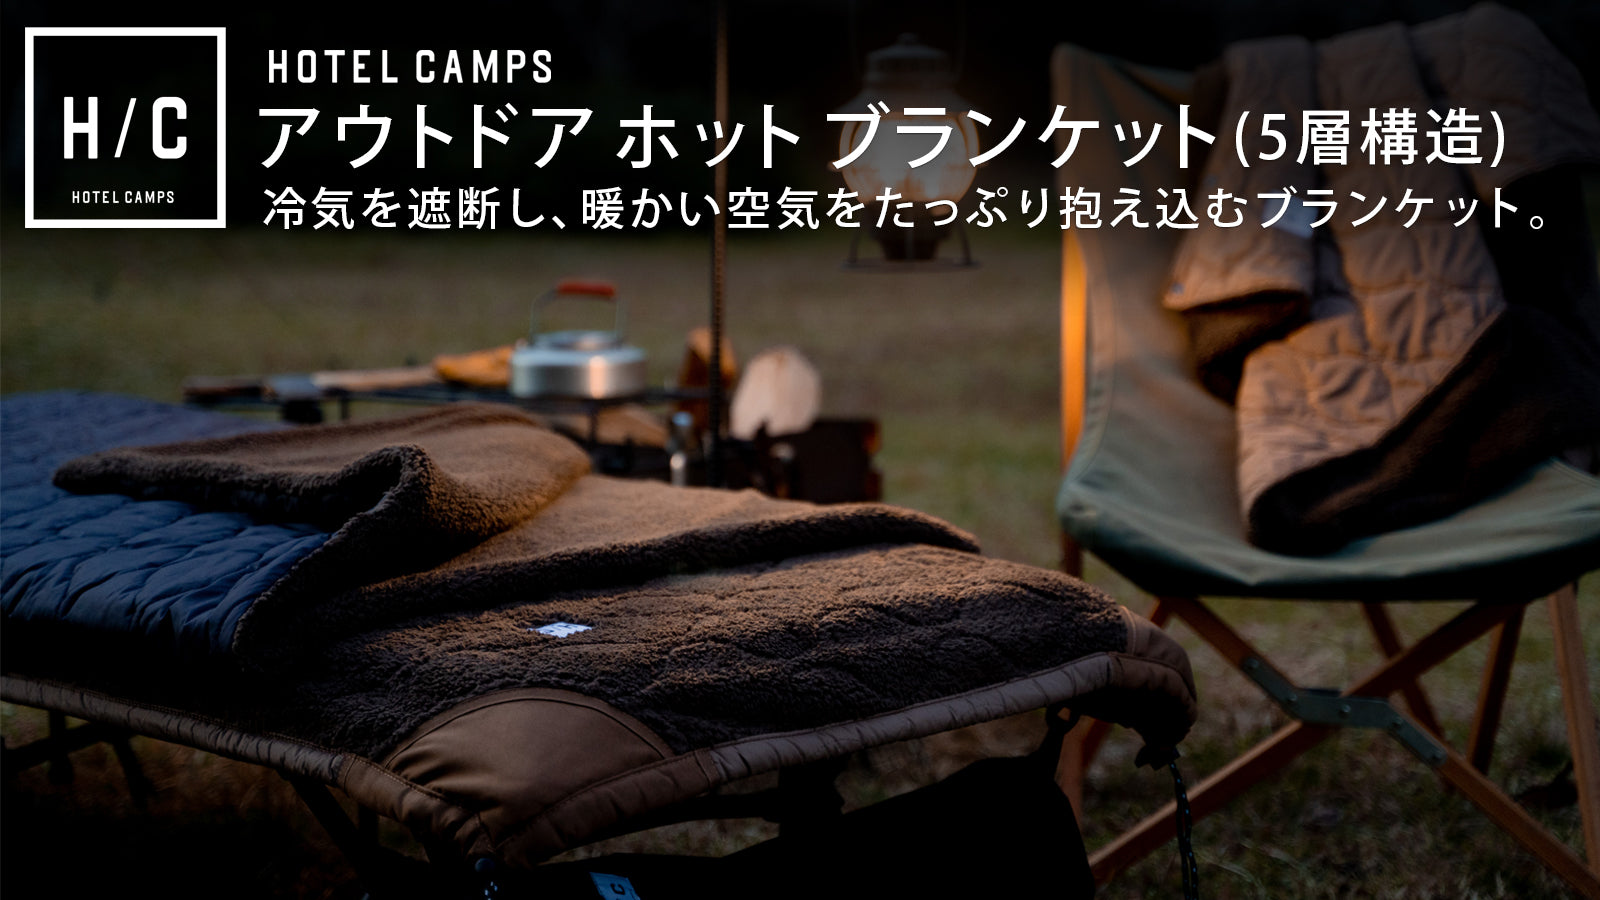 HOTEL CAMPS アウトドア ホットブランケット シェラフキャンプで1回使用しました